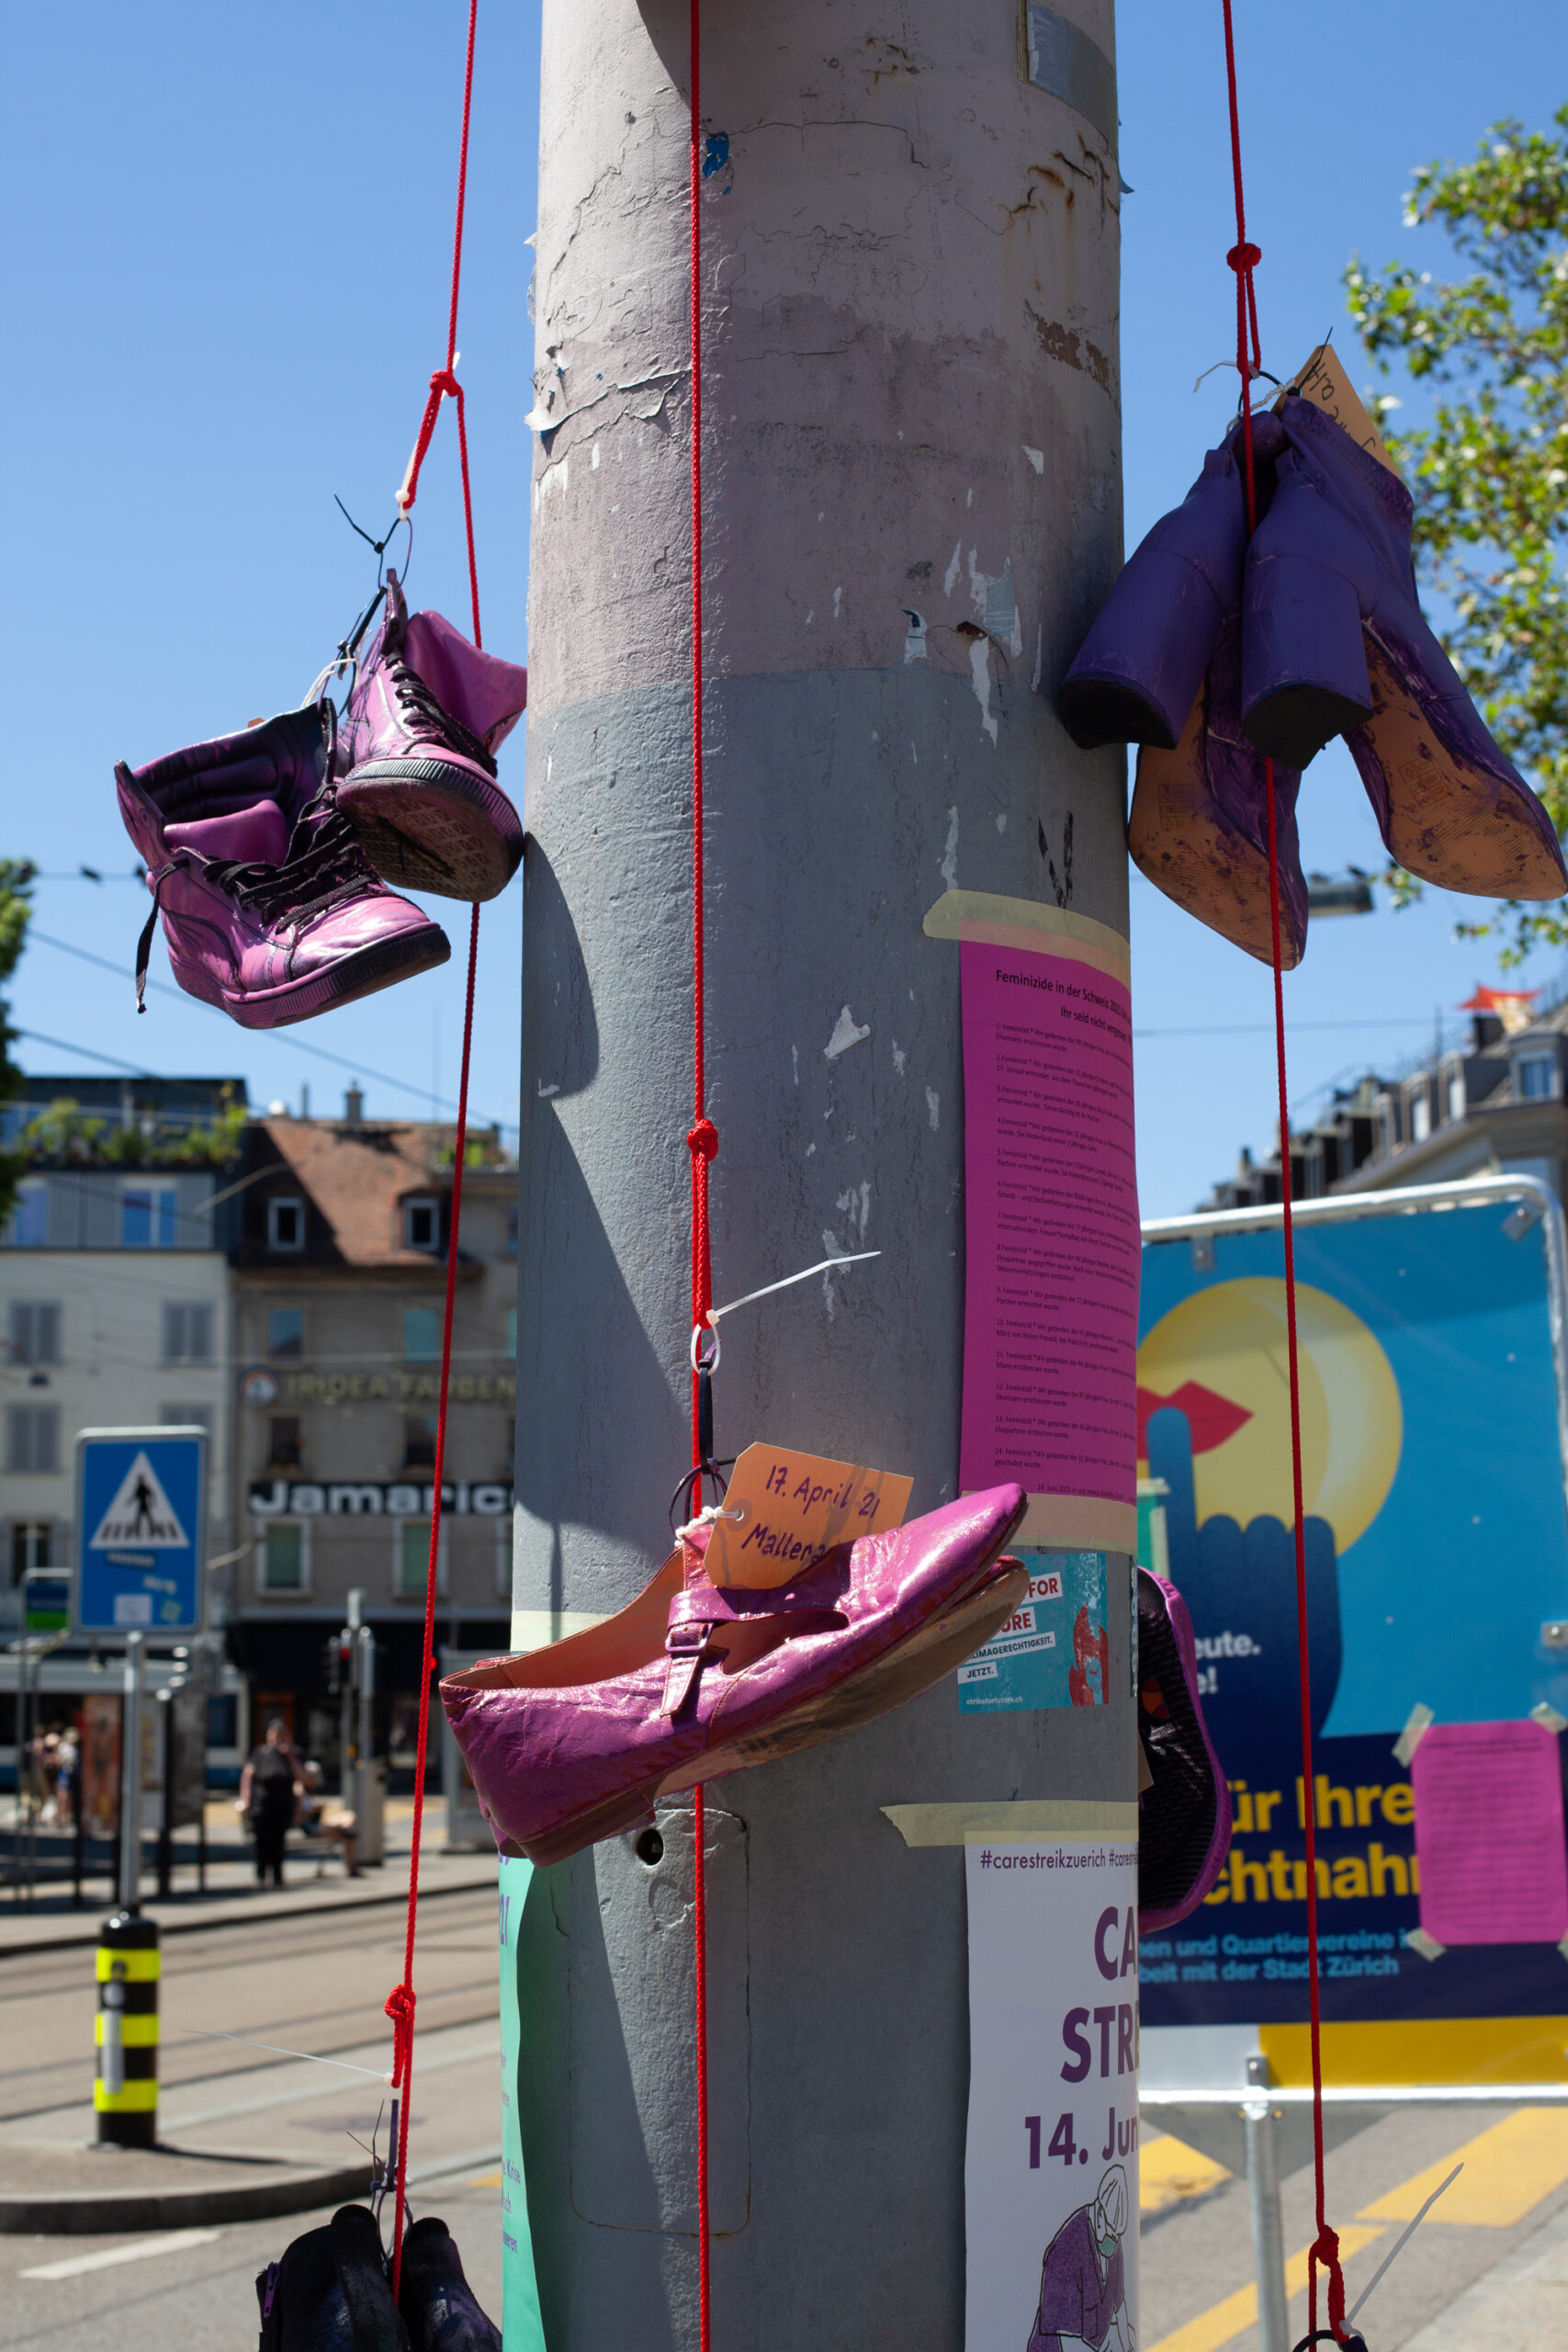 Schuhe, aufgehängt in Memoria an ermordete Frauen. Die Schuhe sind violett oder pink angemalt.